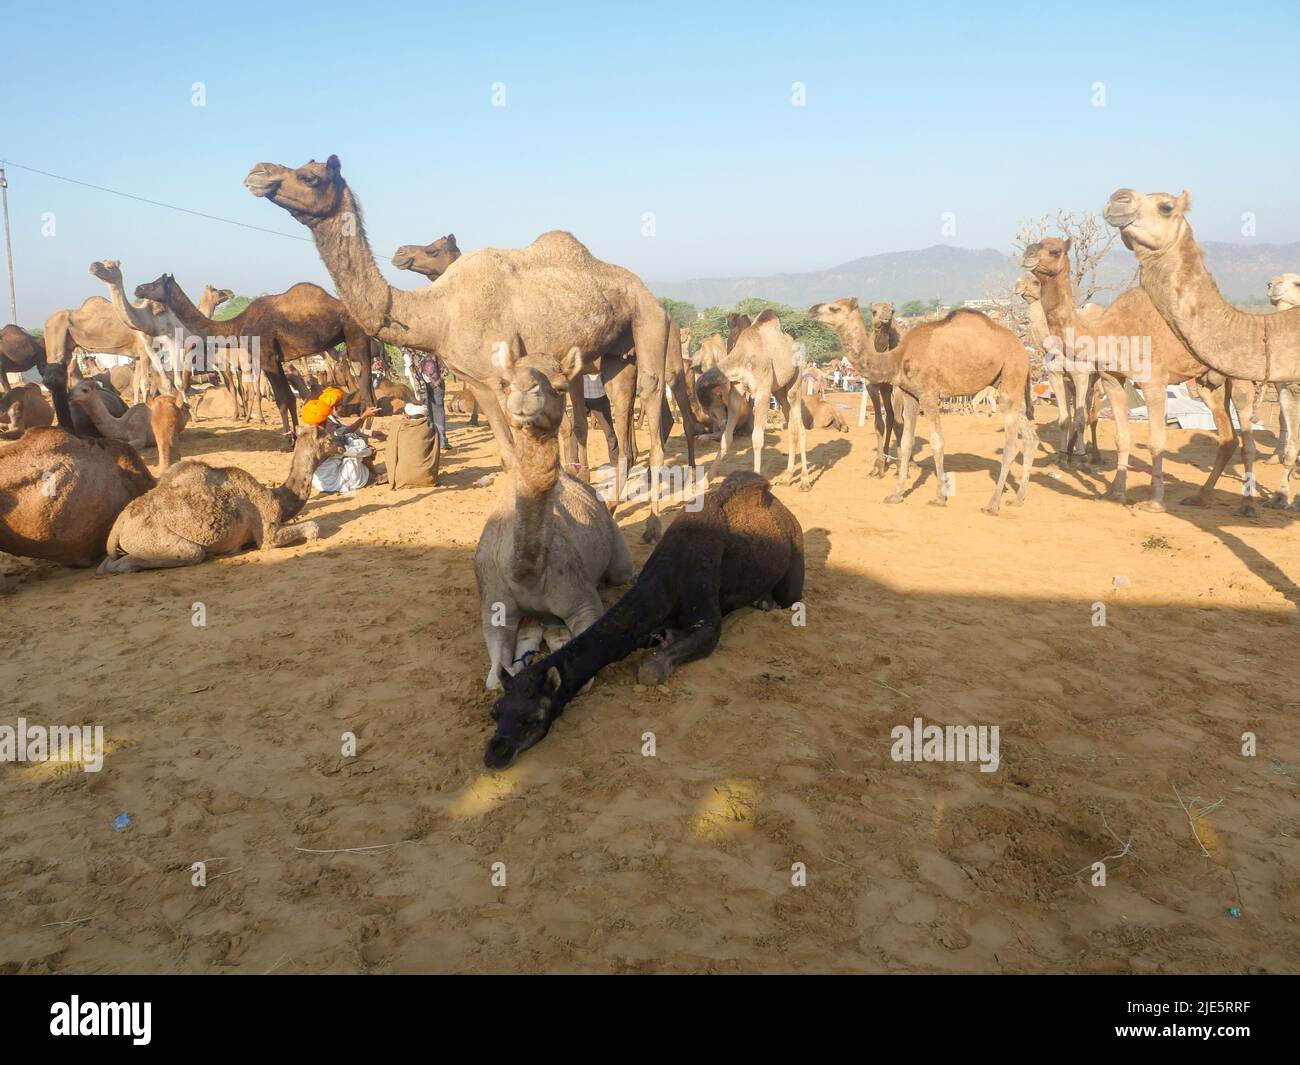 Pushkar, Rajasthan / Inde - 5 novembre 2019 : le troupeau de chameaux s'est rassemblé pour le commerce au plus grand festival indien du désert de chameaux "Foire de chameaux de Pushkar". Banque D'Images